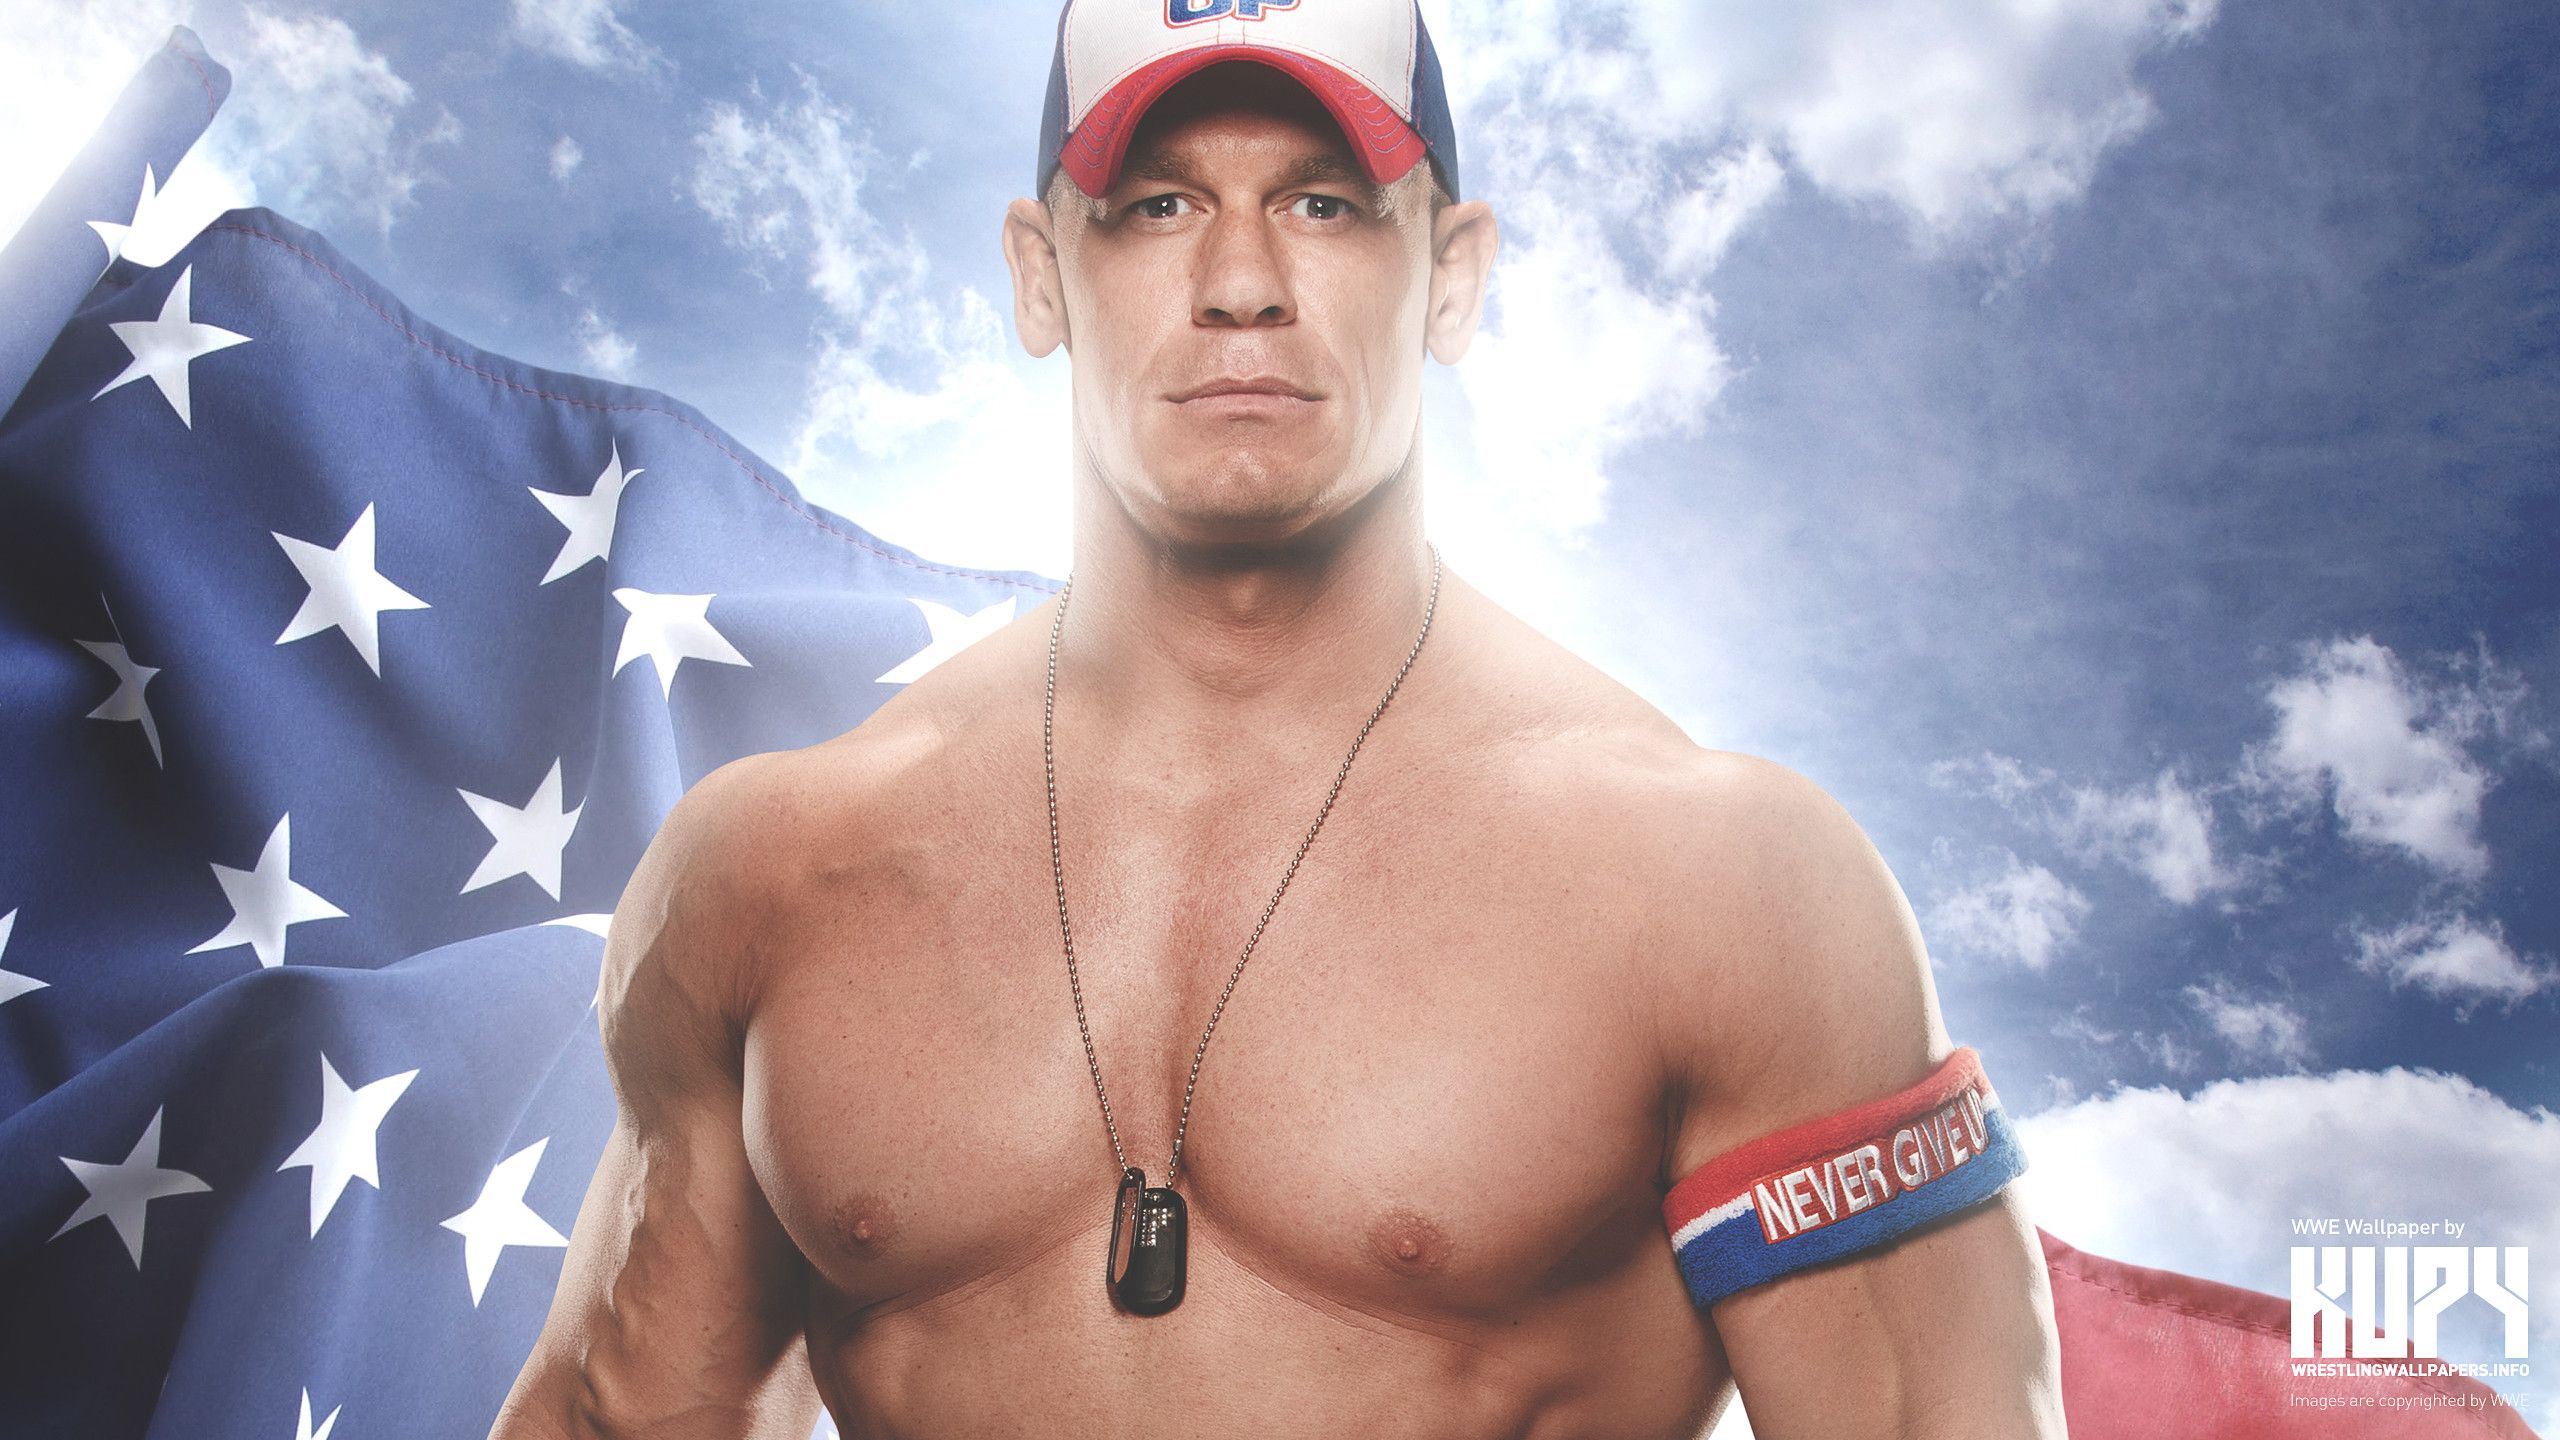 John Cena Shirtless Style HD WWE Wrestler Wallpaper